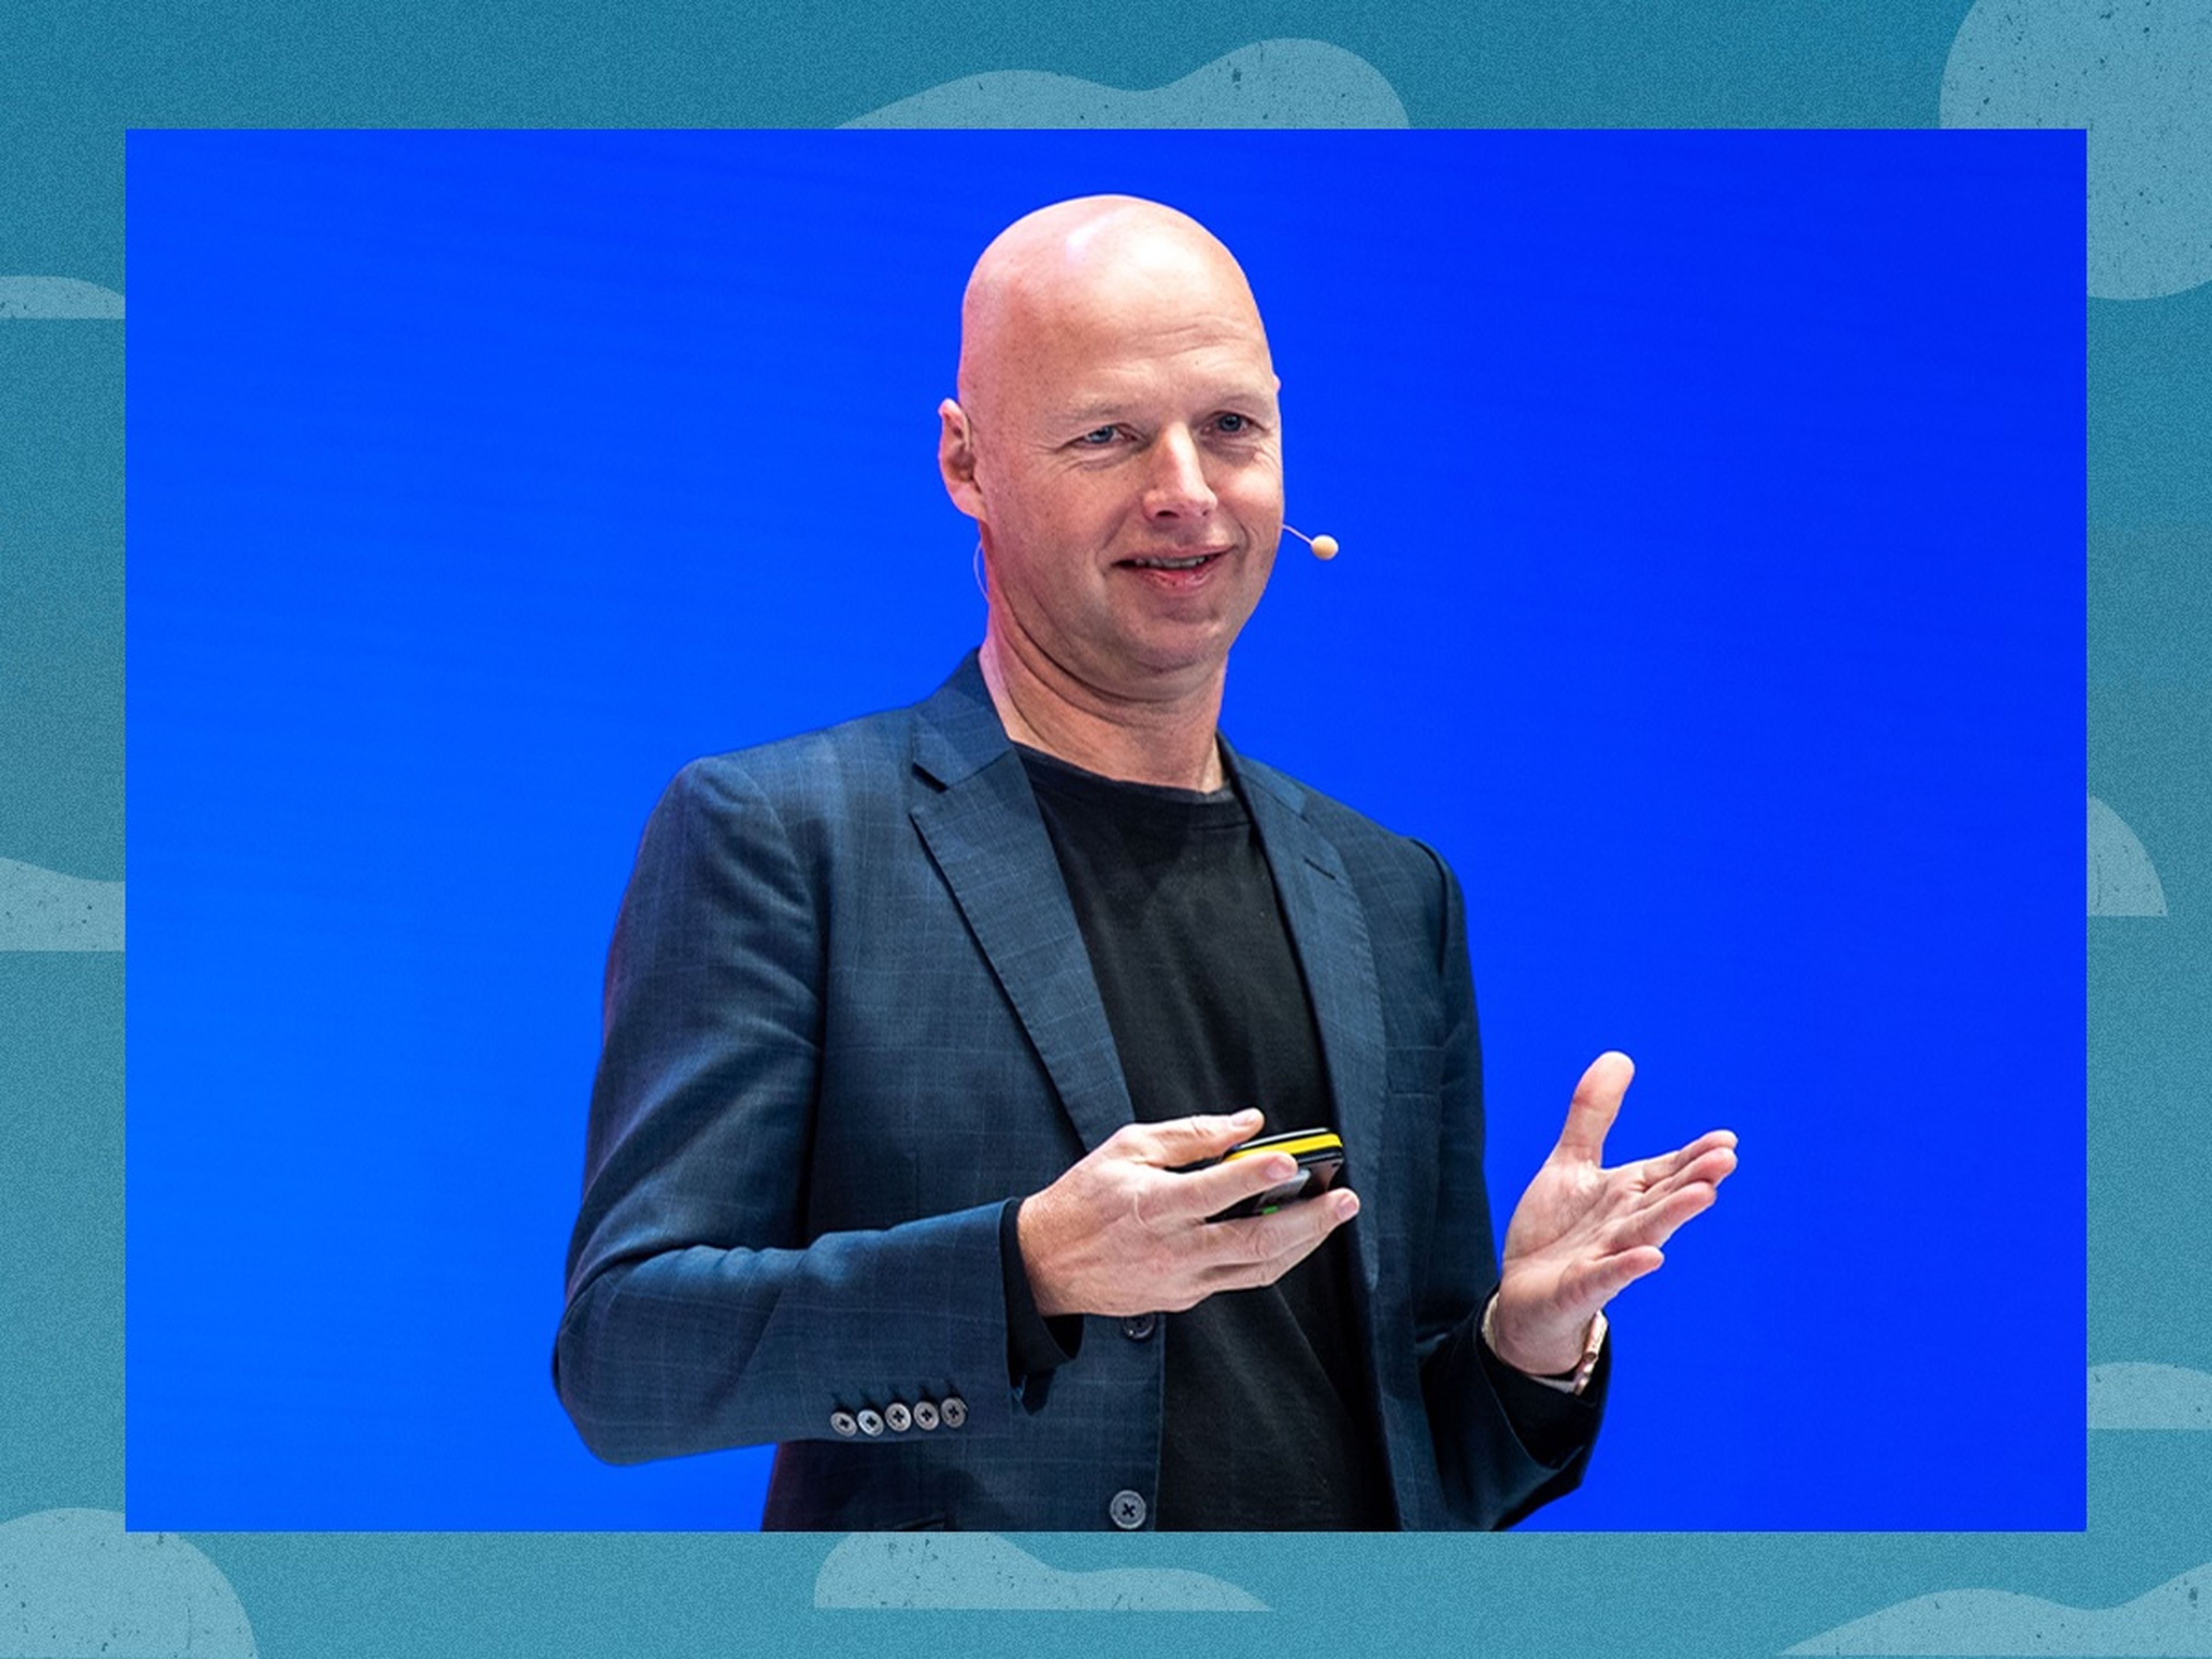 Page eligió al tecnólogo alemán Sebastian Thrun como CEO de Kittyhawk, pero no pudo hacer realidad la visión de Page.